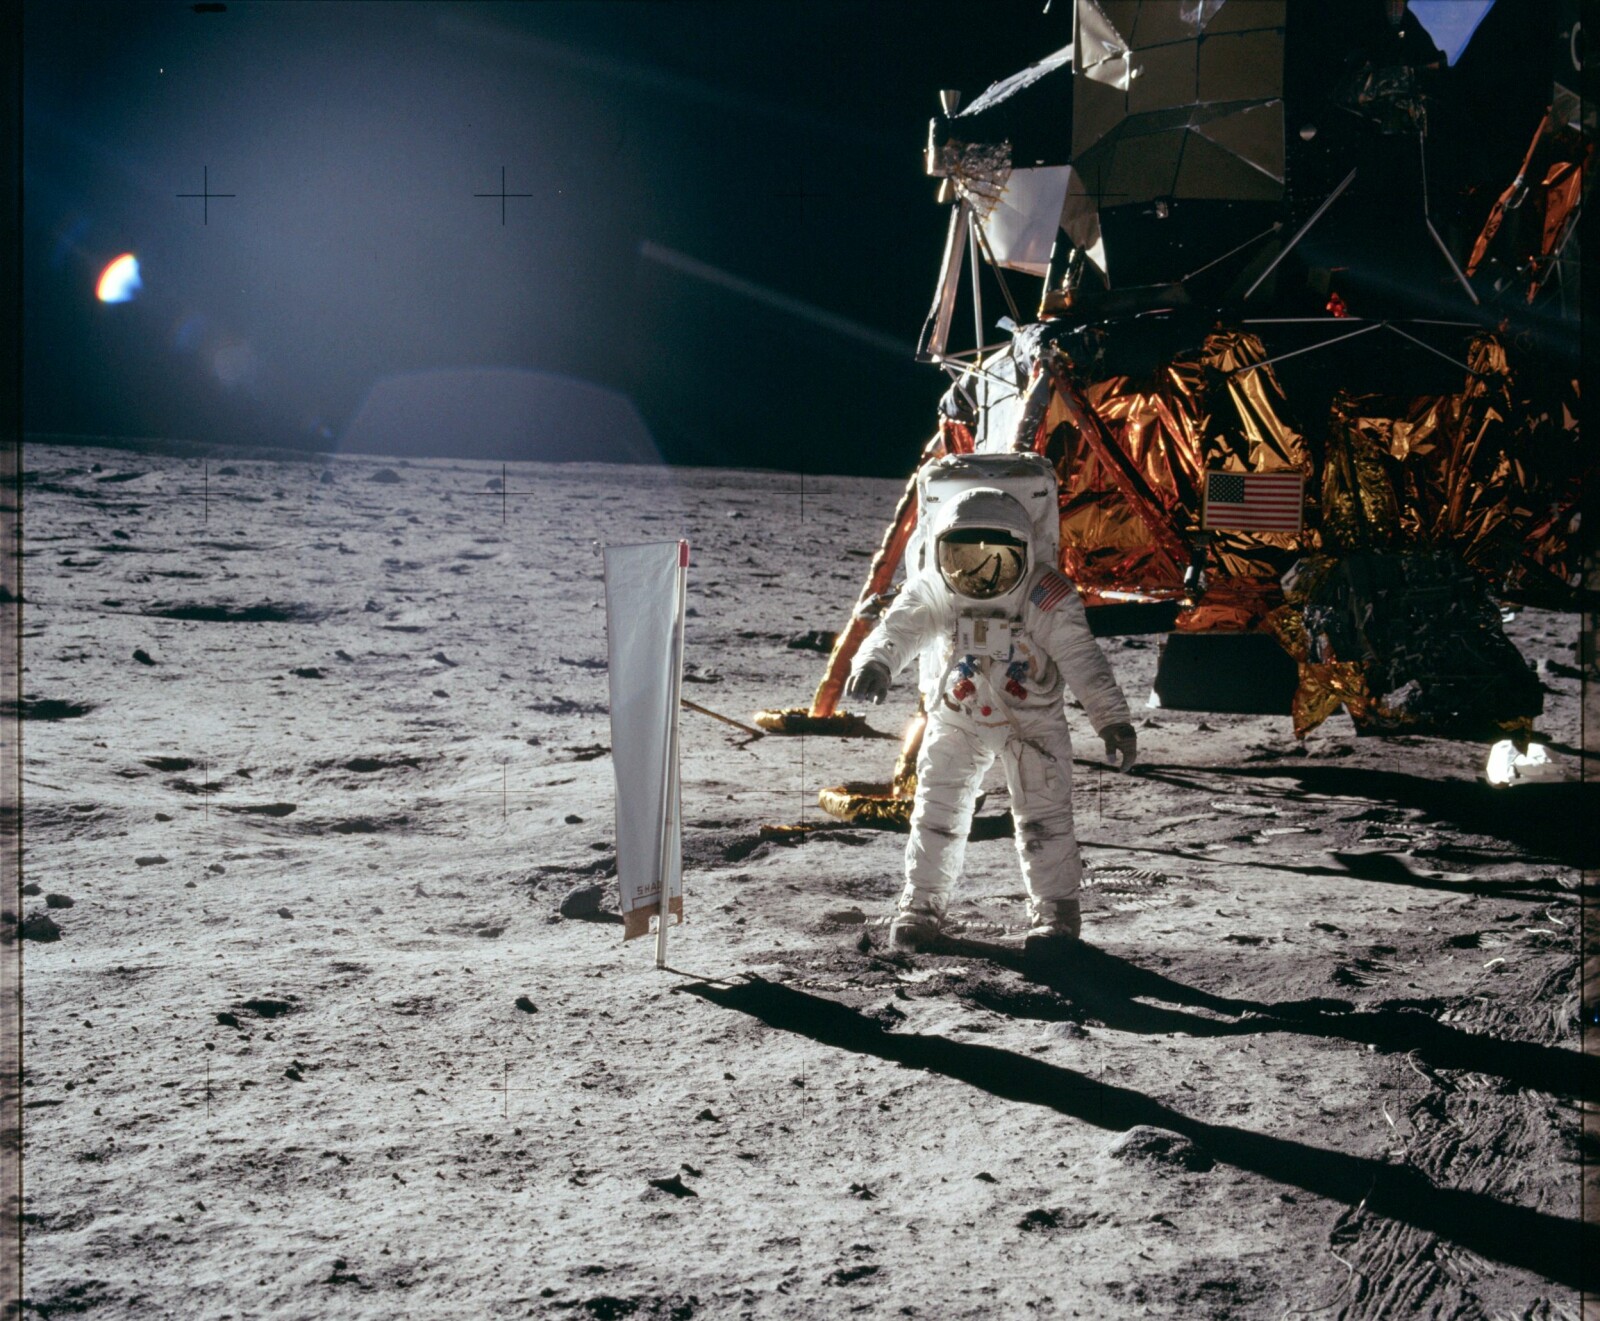 <b>MÅNEMANN:</b> Den første månelandingen skjedde 24. juli 1969 med astronautene Neil Armstrong og Buzz Aldrin. Aldrin beskriver spaserturen som ren glede. 